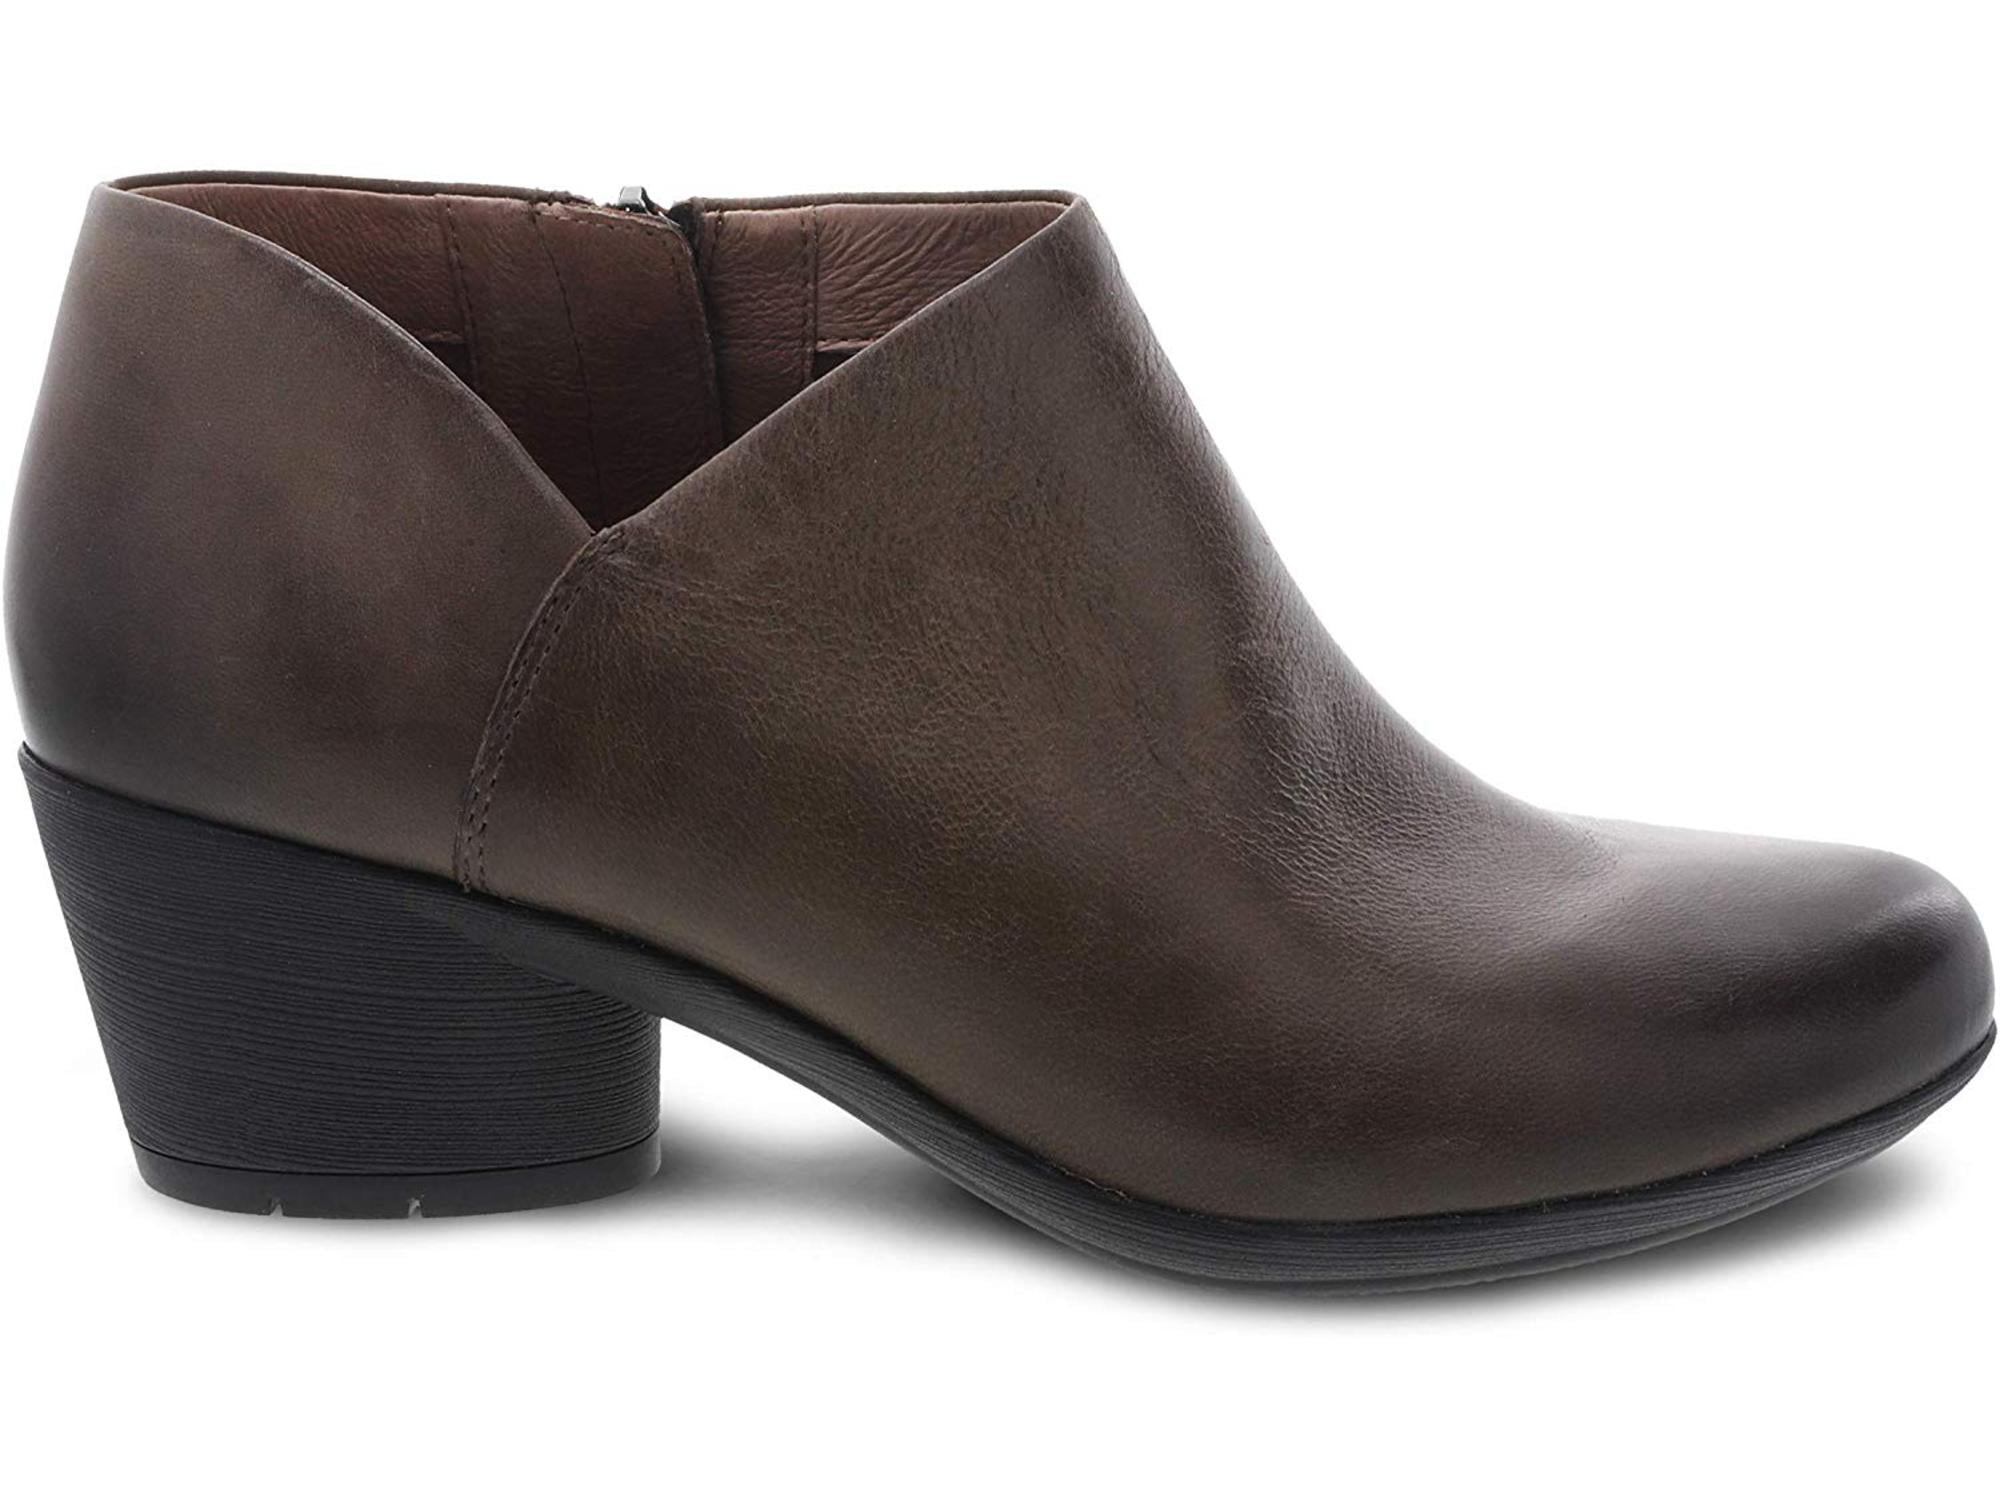 dansko women's boots